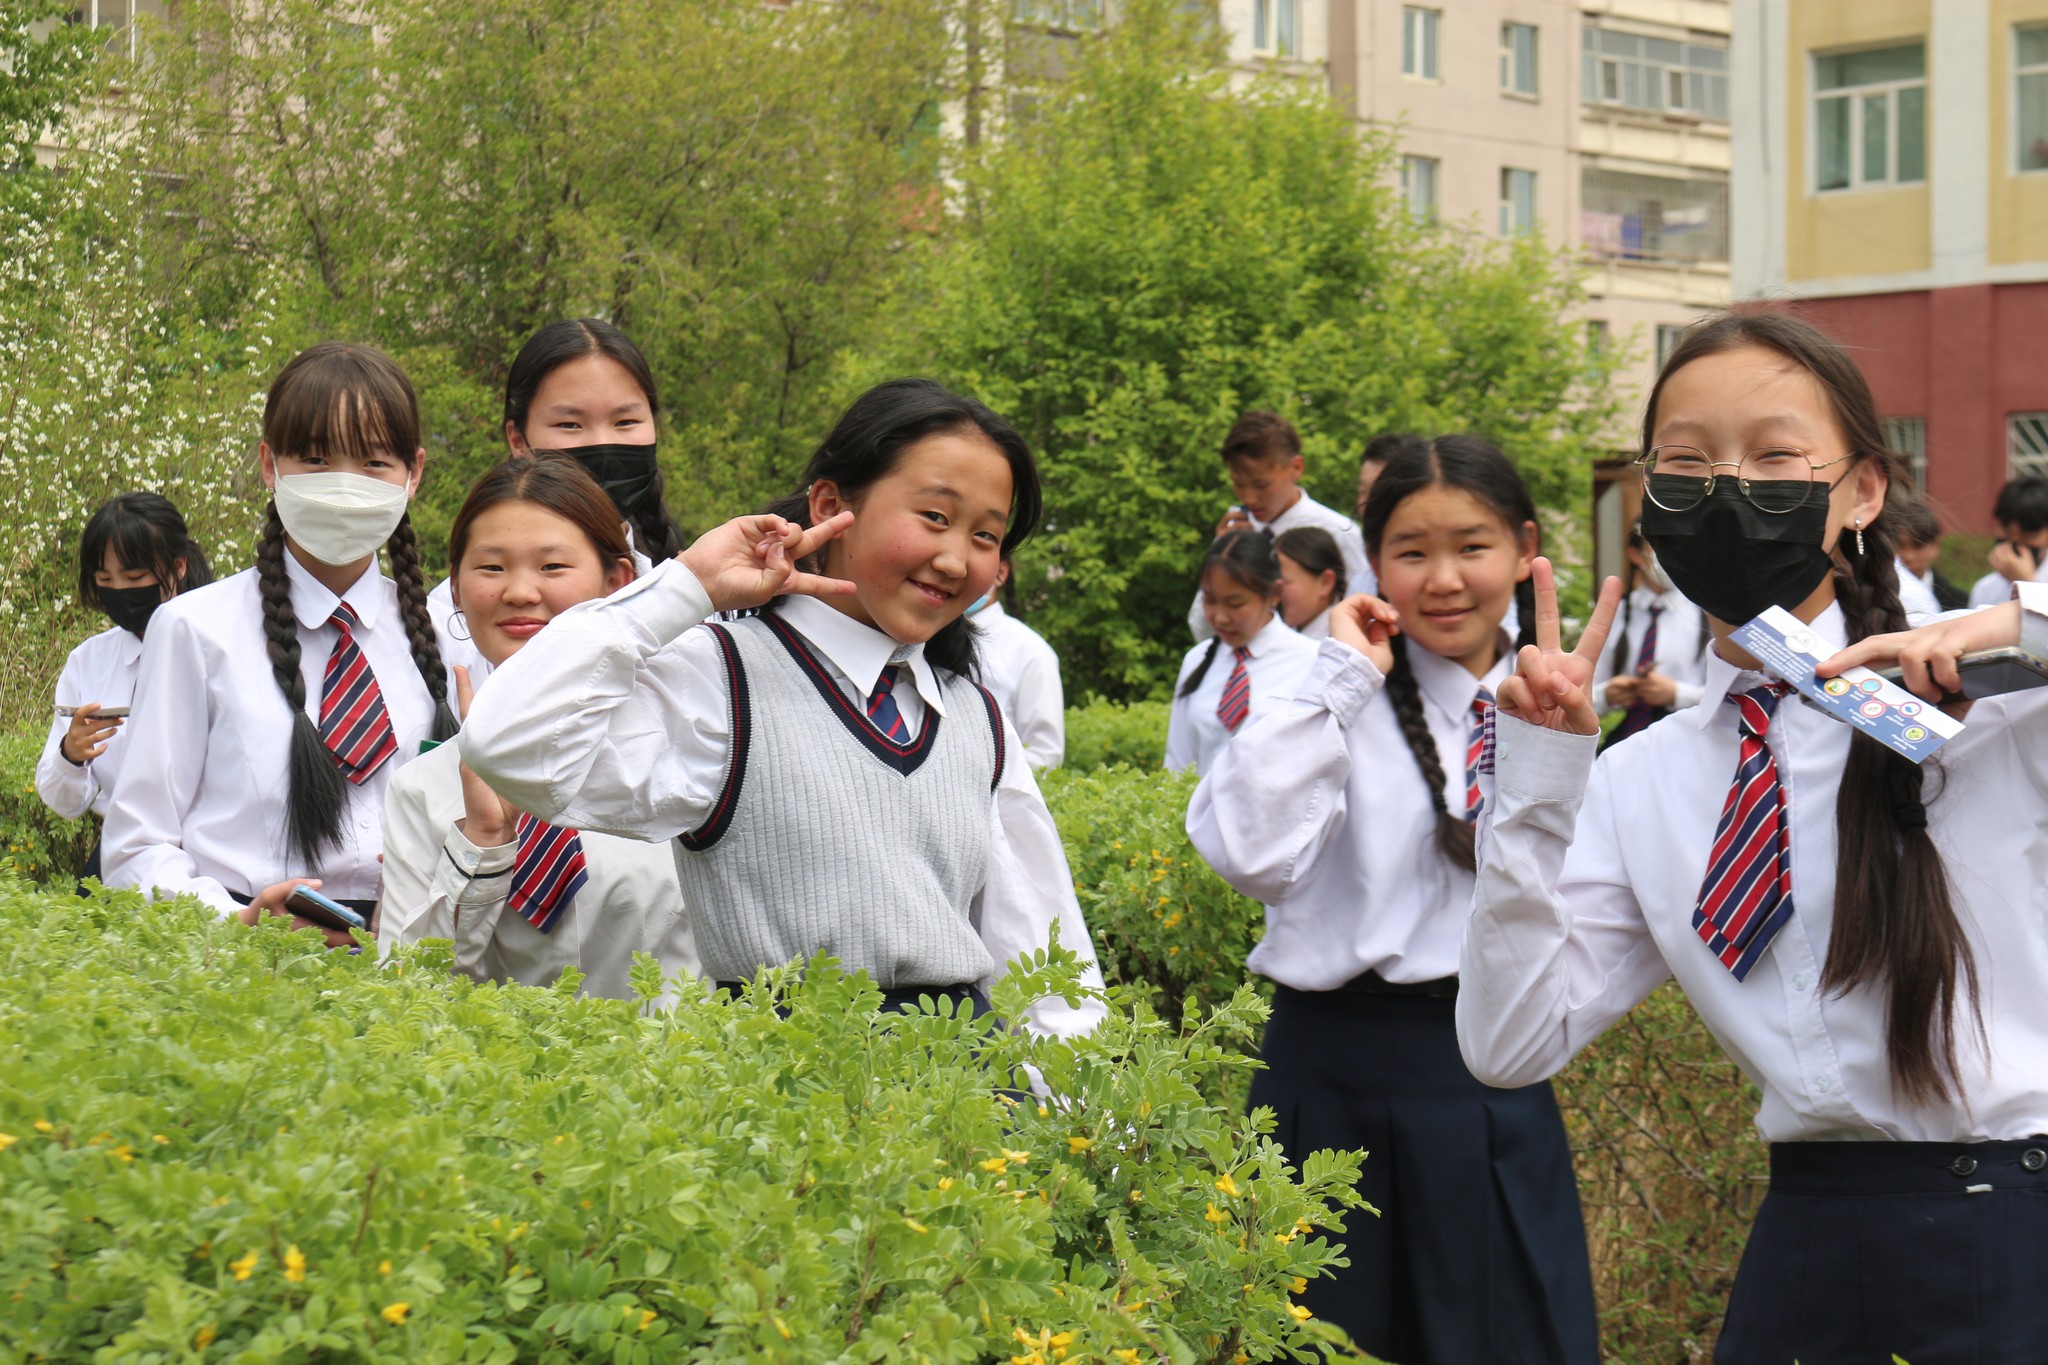 5000 хүүхдэд экологийн болон хүрээлэн буй орчны эрх зүйн боловсрол олгожээ